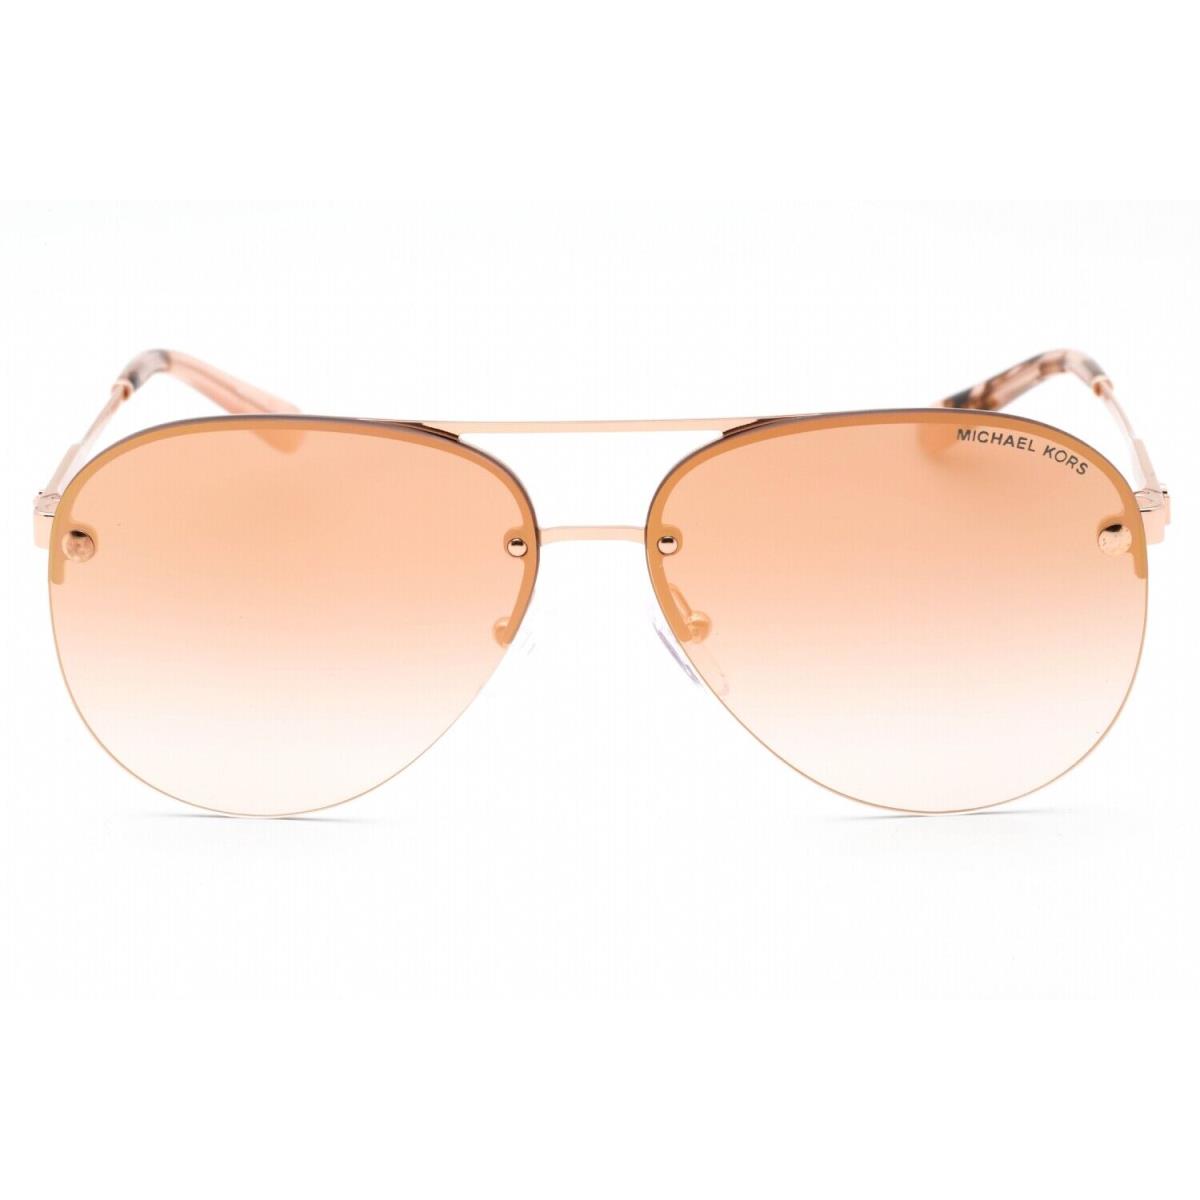 Michael Kors MK1135B-11086F-59 Sunglasses Size 59mm 140mm 12mm Rosegold Women